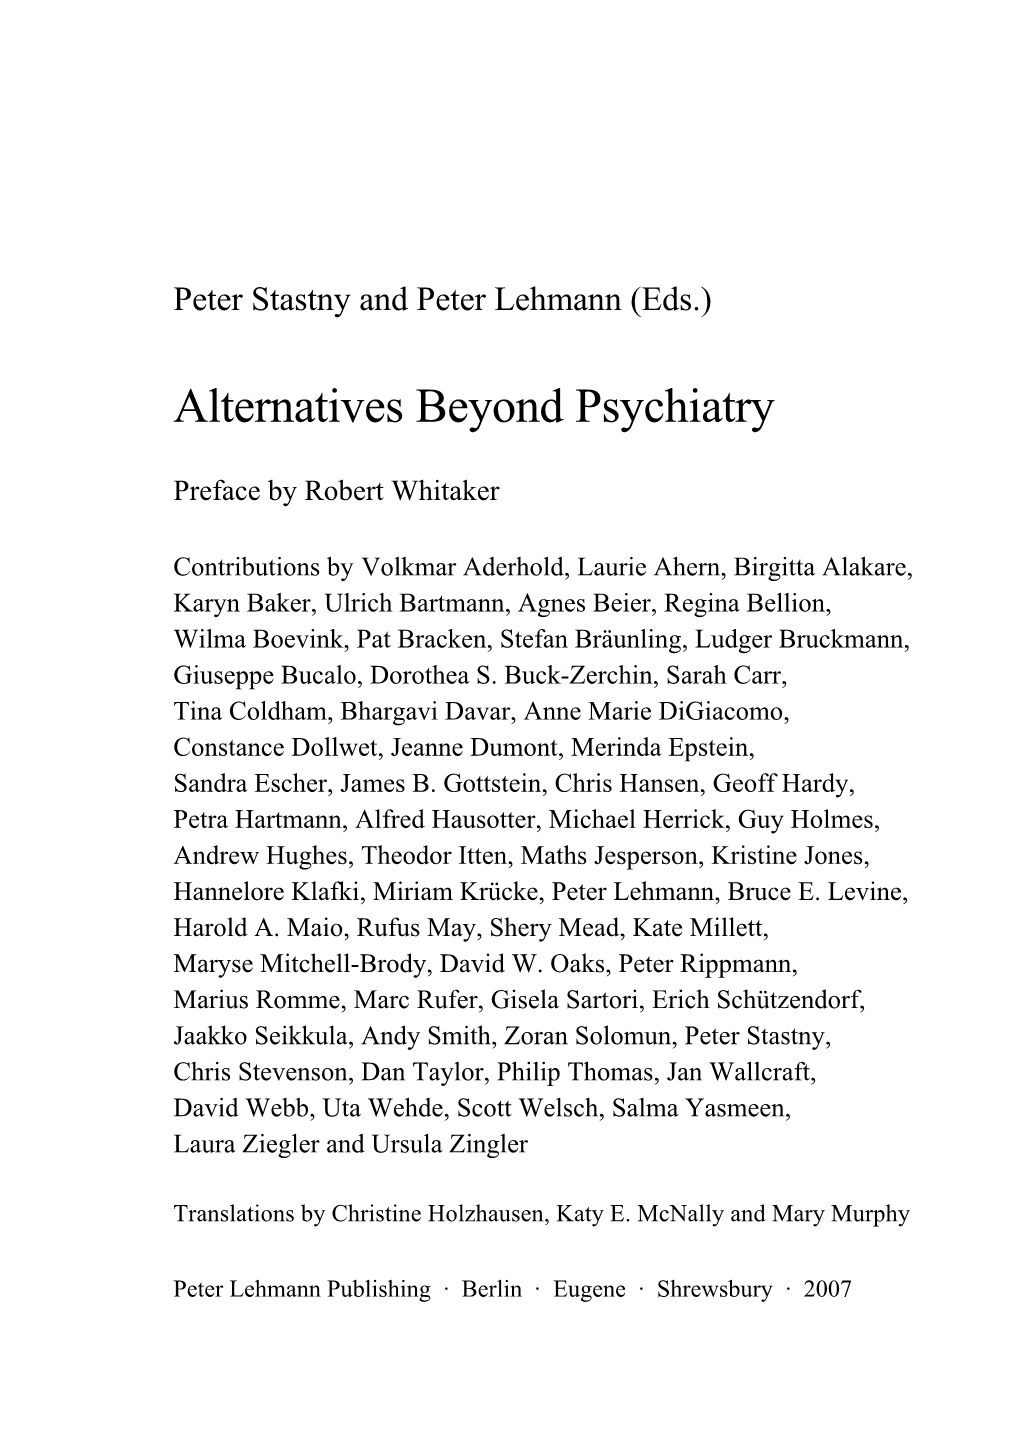 Alternatives Beyond Psychiatry